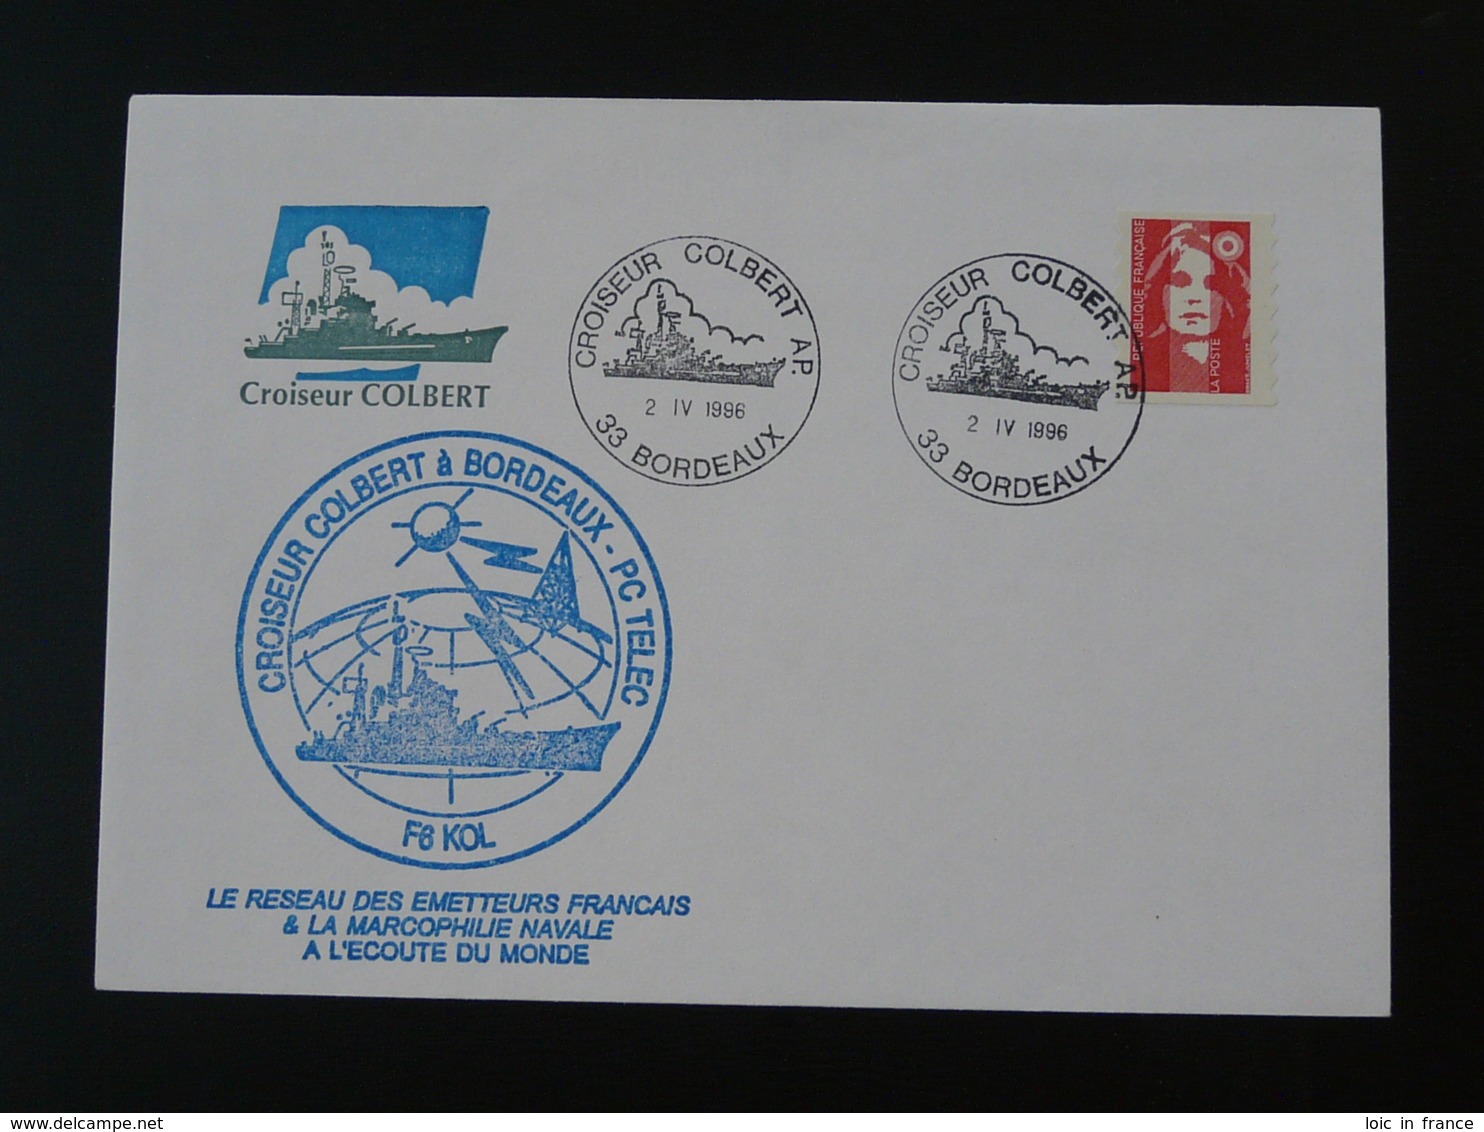 Lettre Commemorative Cover Croiseur Colbert Marcophilie Navale Bordeaux 1996 - Poste Navale